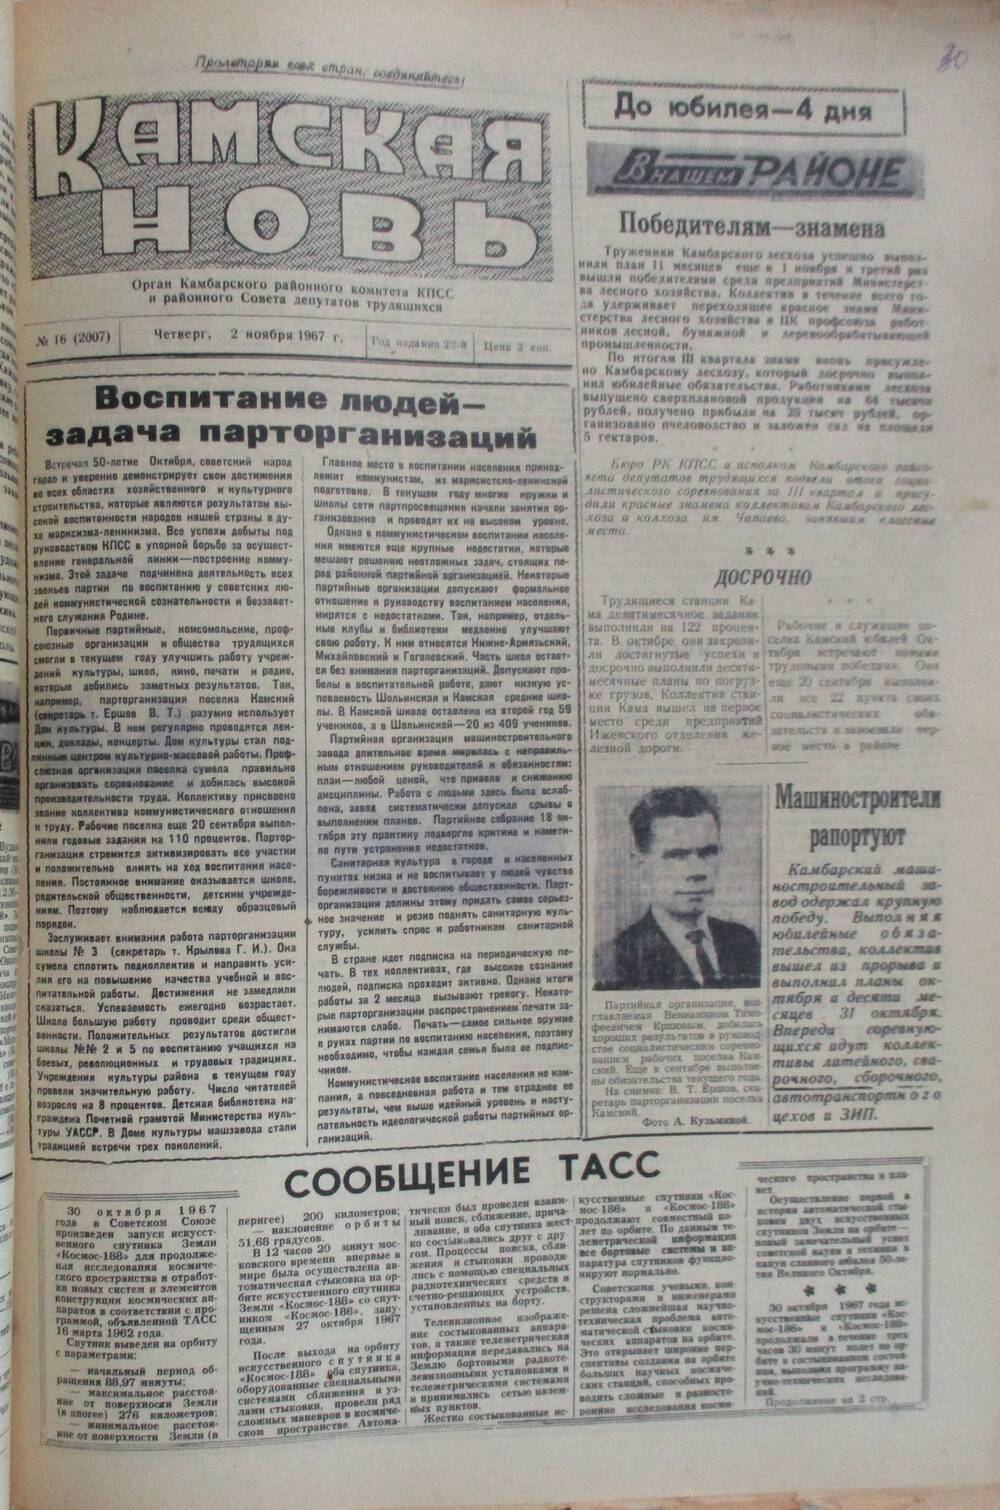 Подшивка газет Камская новь с №1 по №31, 1967 г., №16.